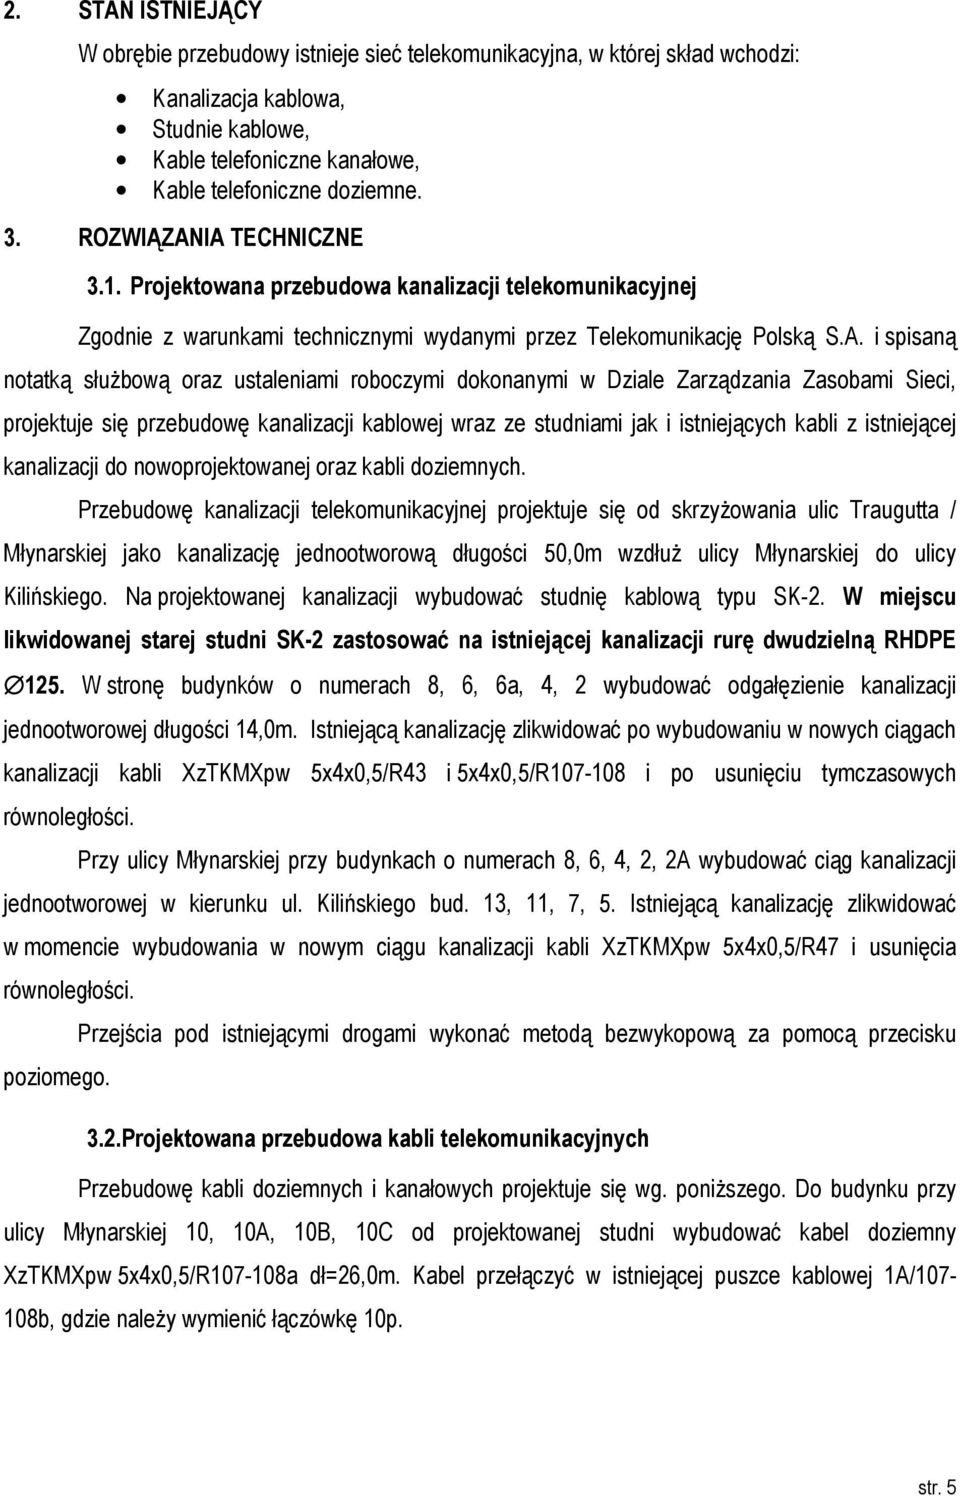 IA TECHNICZNE 3.1. Projektowana przebudowa kanalizacji telekomunikacyjnej Zgodnie z warunkami technicznymi wydanymi przez Telekomunikację Polską S.A. i spisaną notatką służbową oraz ustaleniami